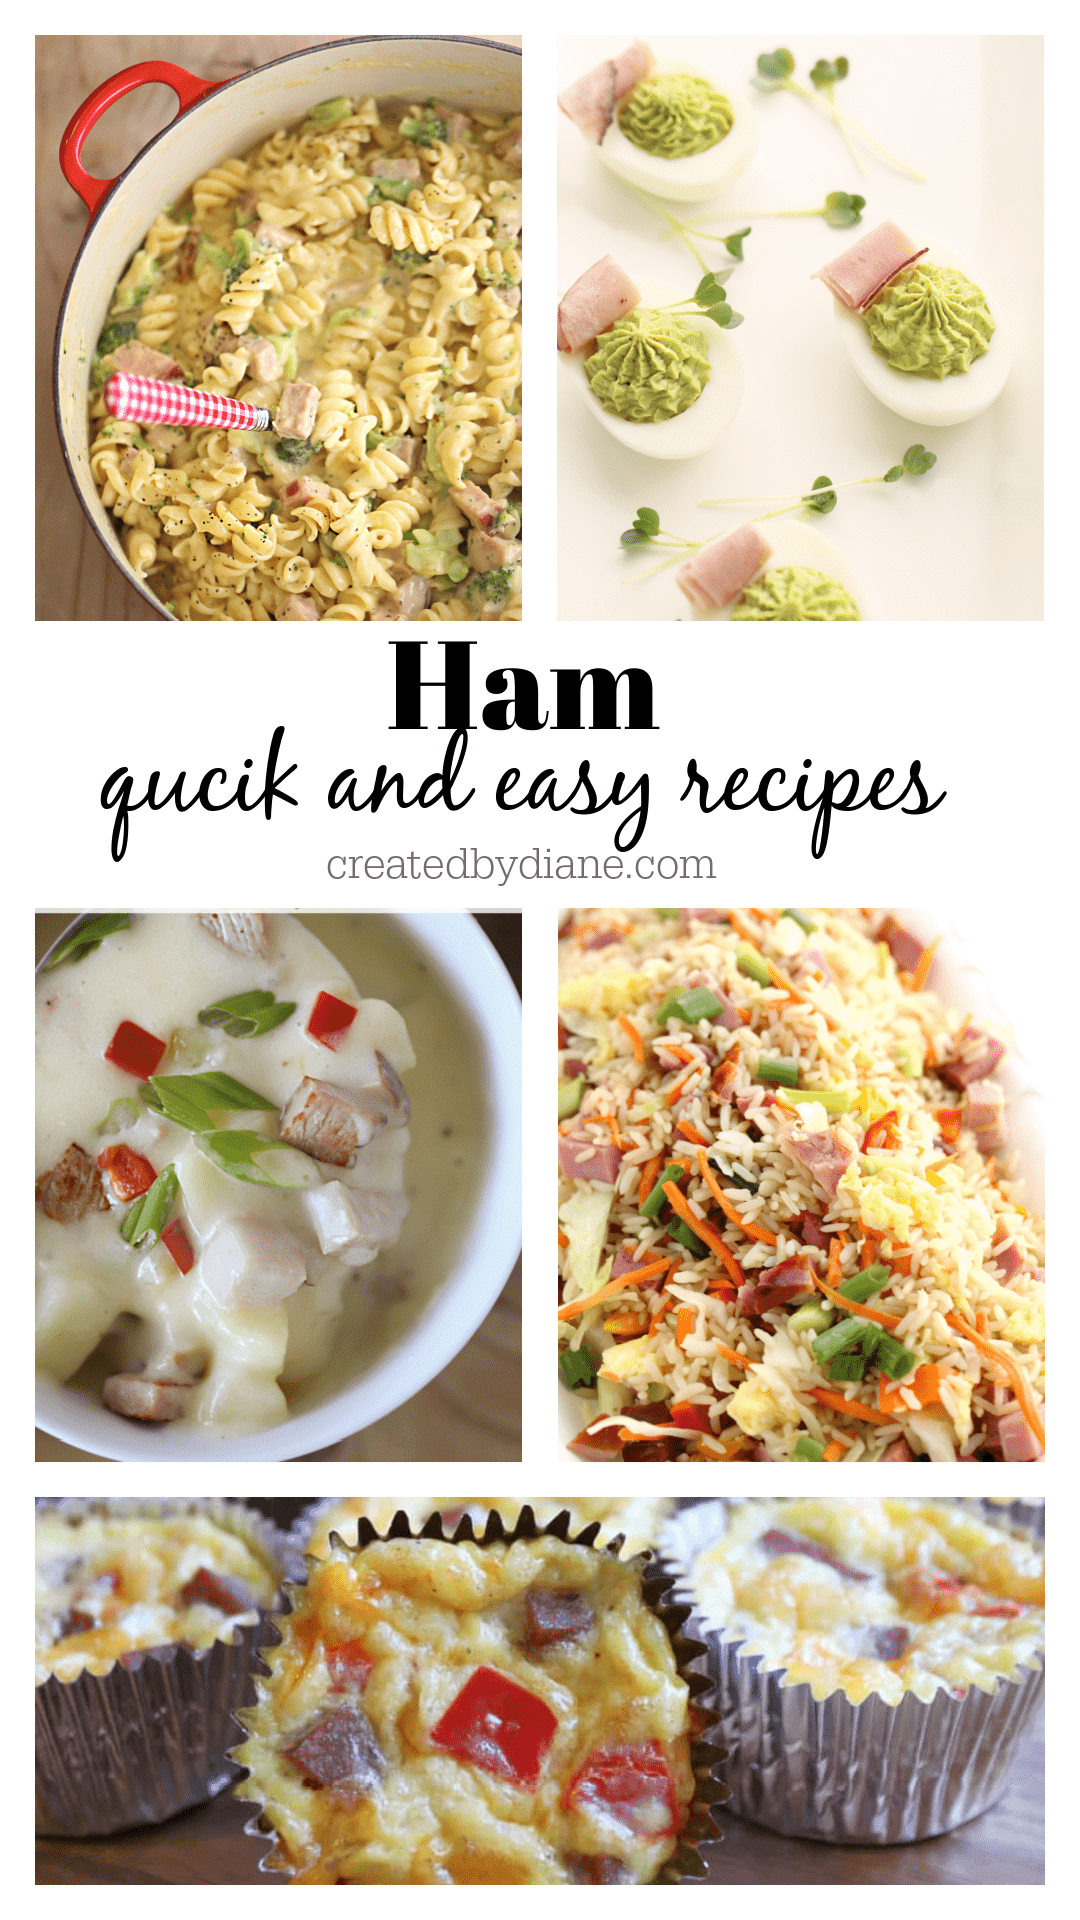 Ham-quick and easy recipes using ham